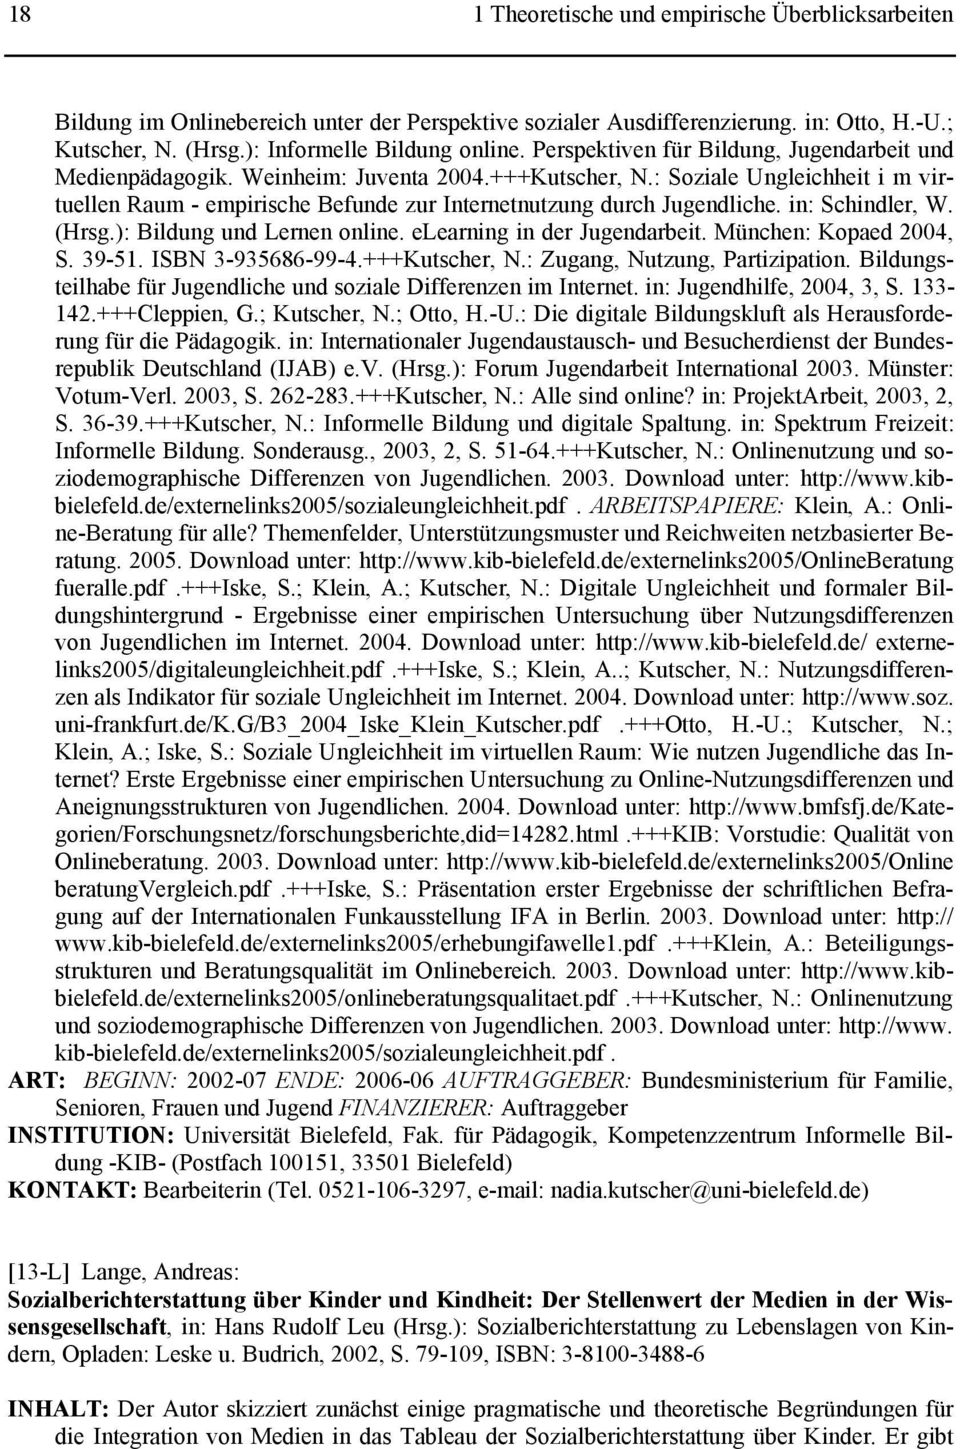 in: Schindler, W. (Hrsg.): Bildung und Lernen online. elearning in der Jugendarbeit. München: Kopaed 2004, S. 39-51. ISBN 3-935686-99-4.+++Kutscher, N.: Zugang, Nutzung, Partizipation.